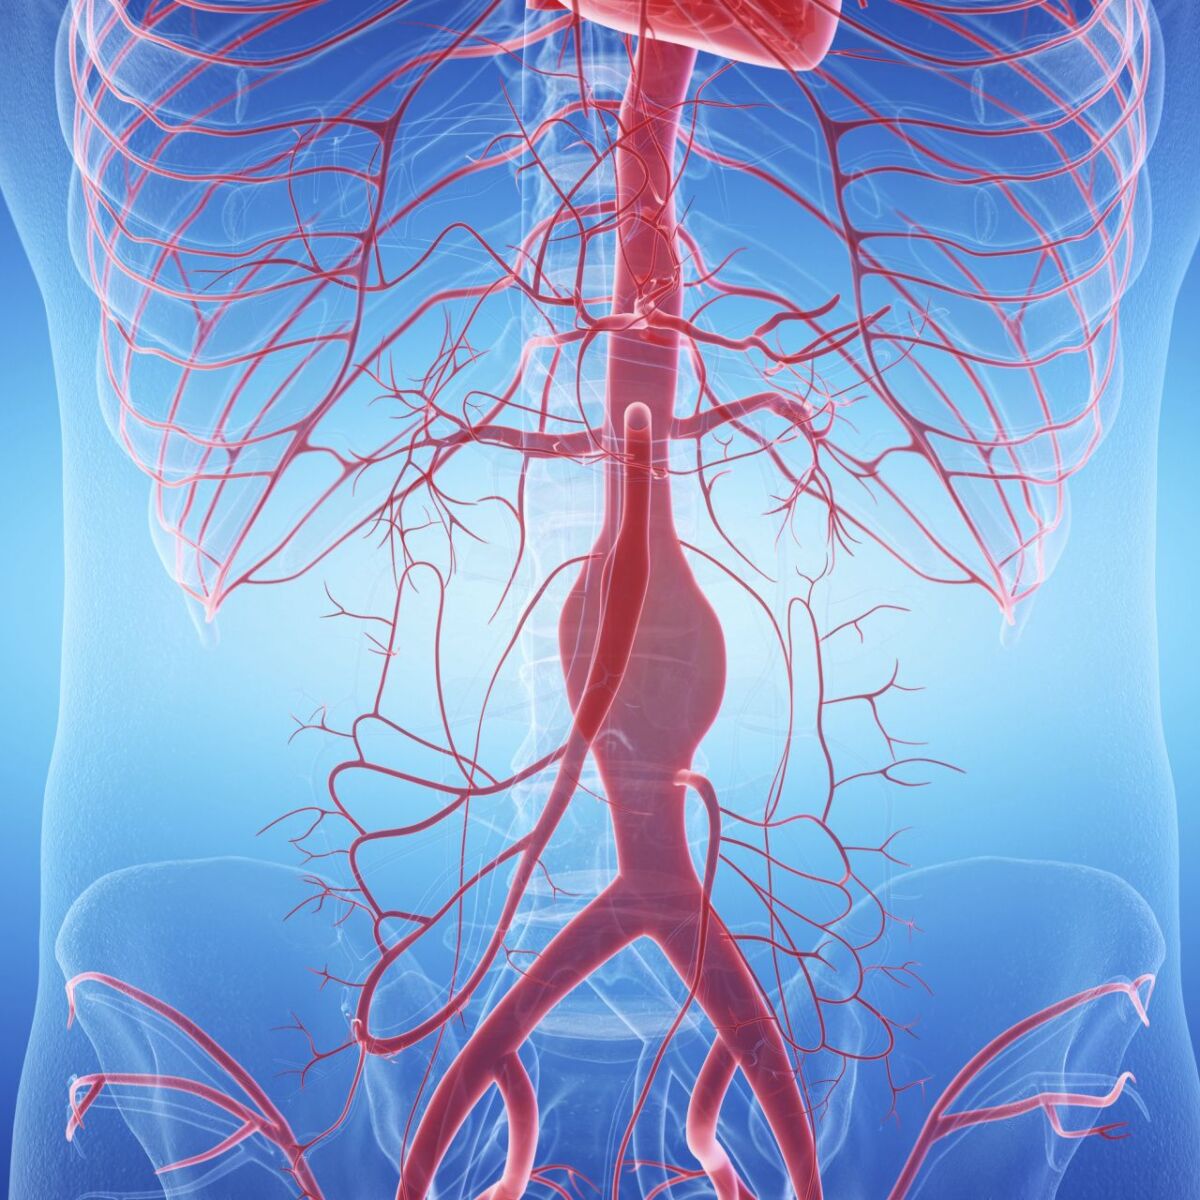 Illustration der Arterien im Körper mit Fokus auf eine aufgeblähte Arterie - Aneurysma